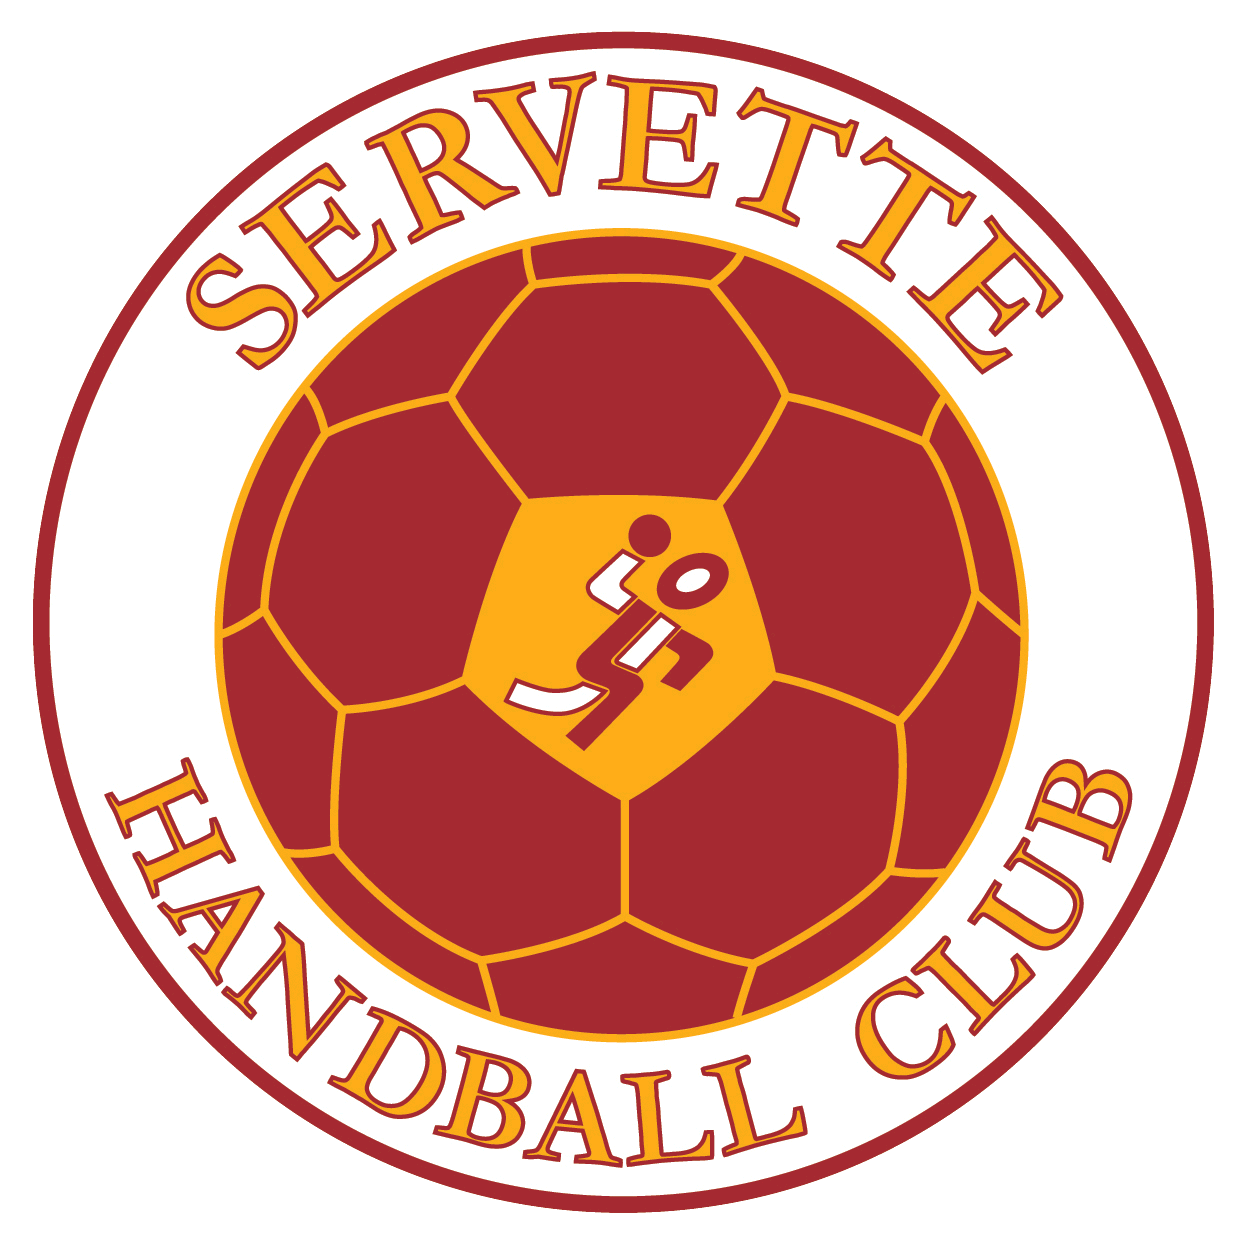 Servette Handball Logo